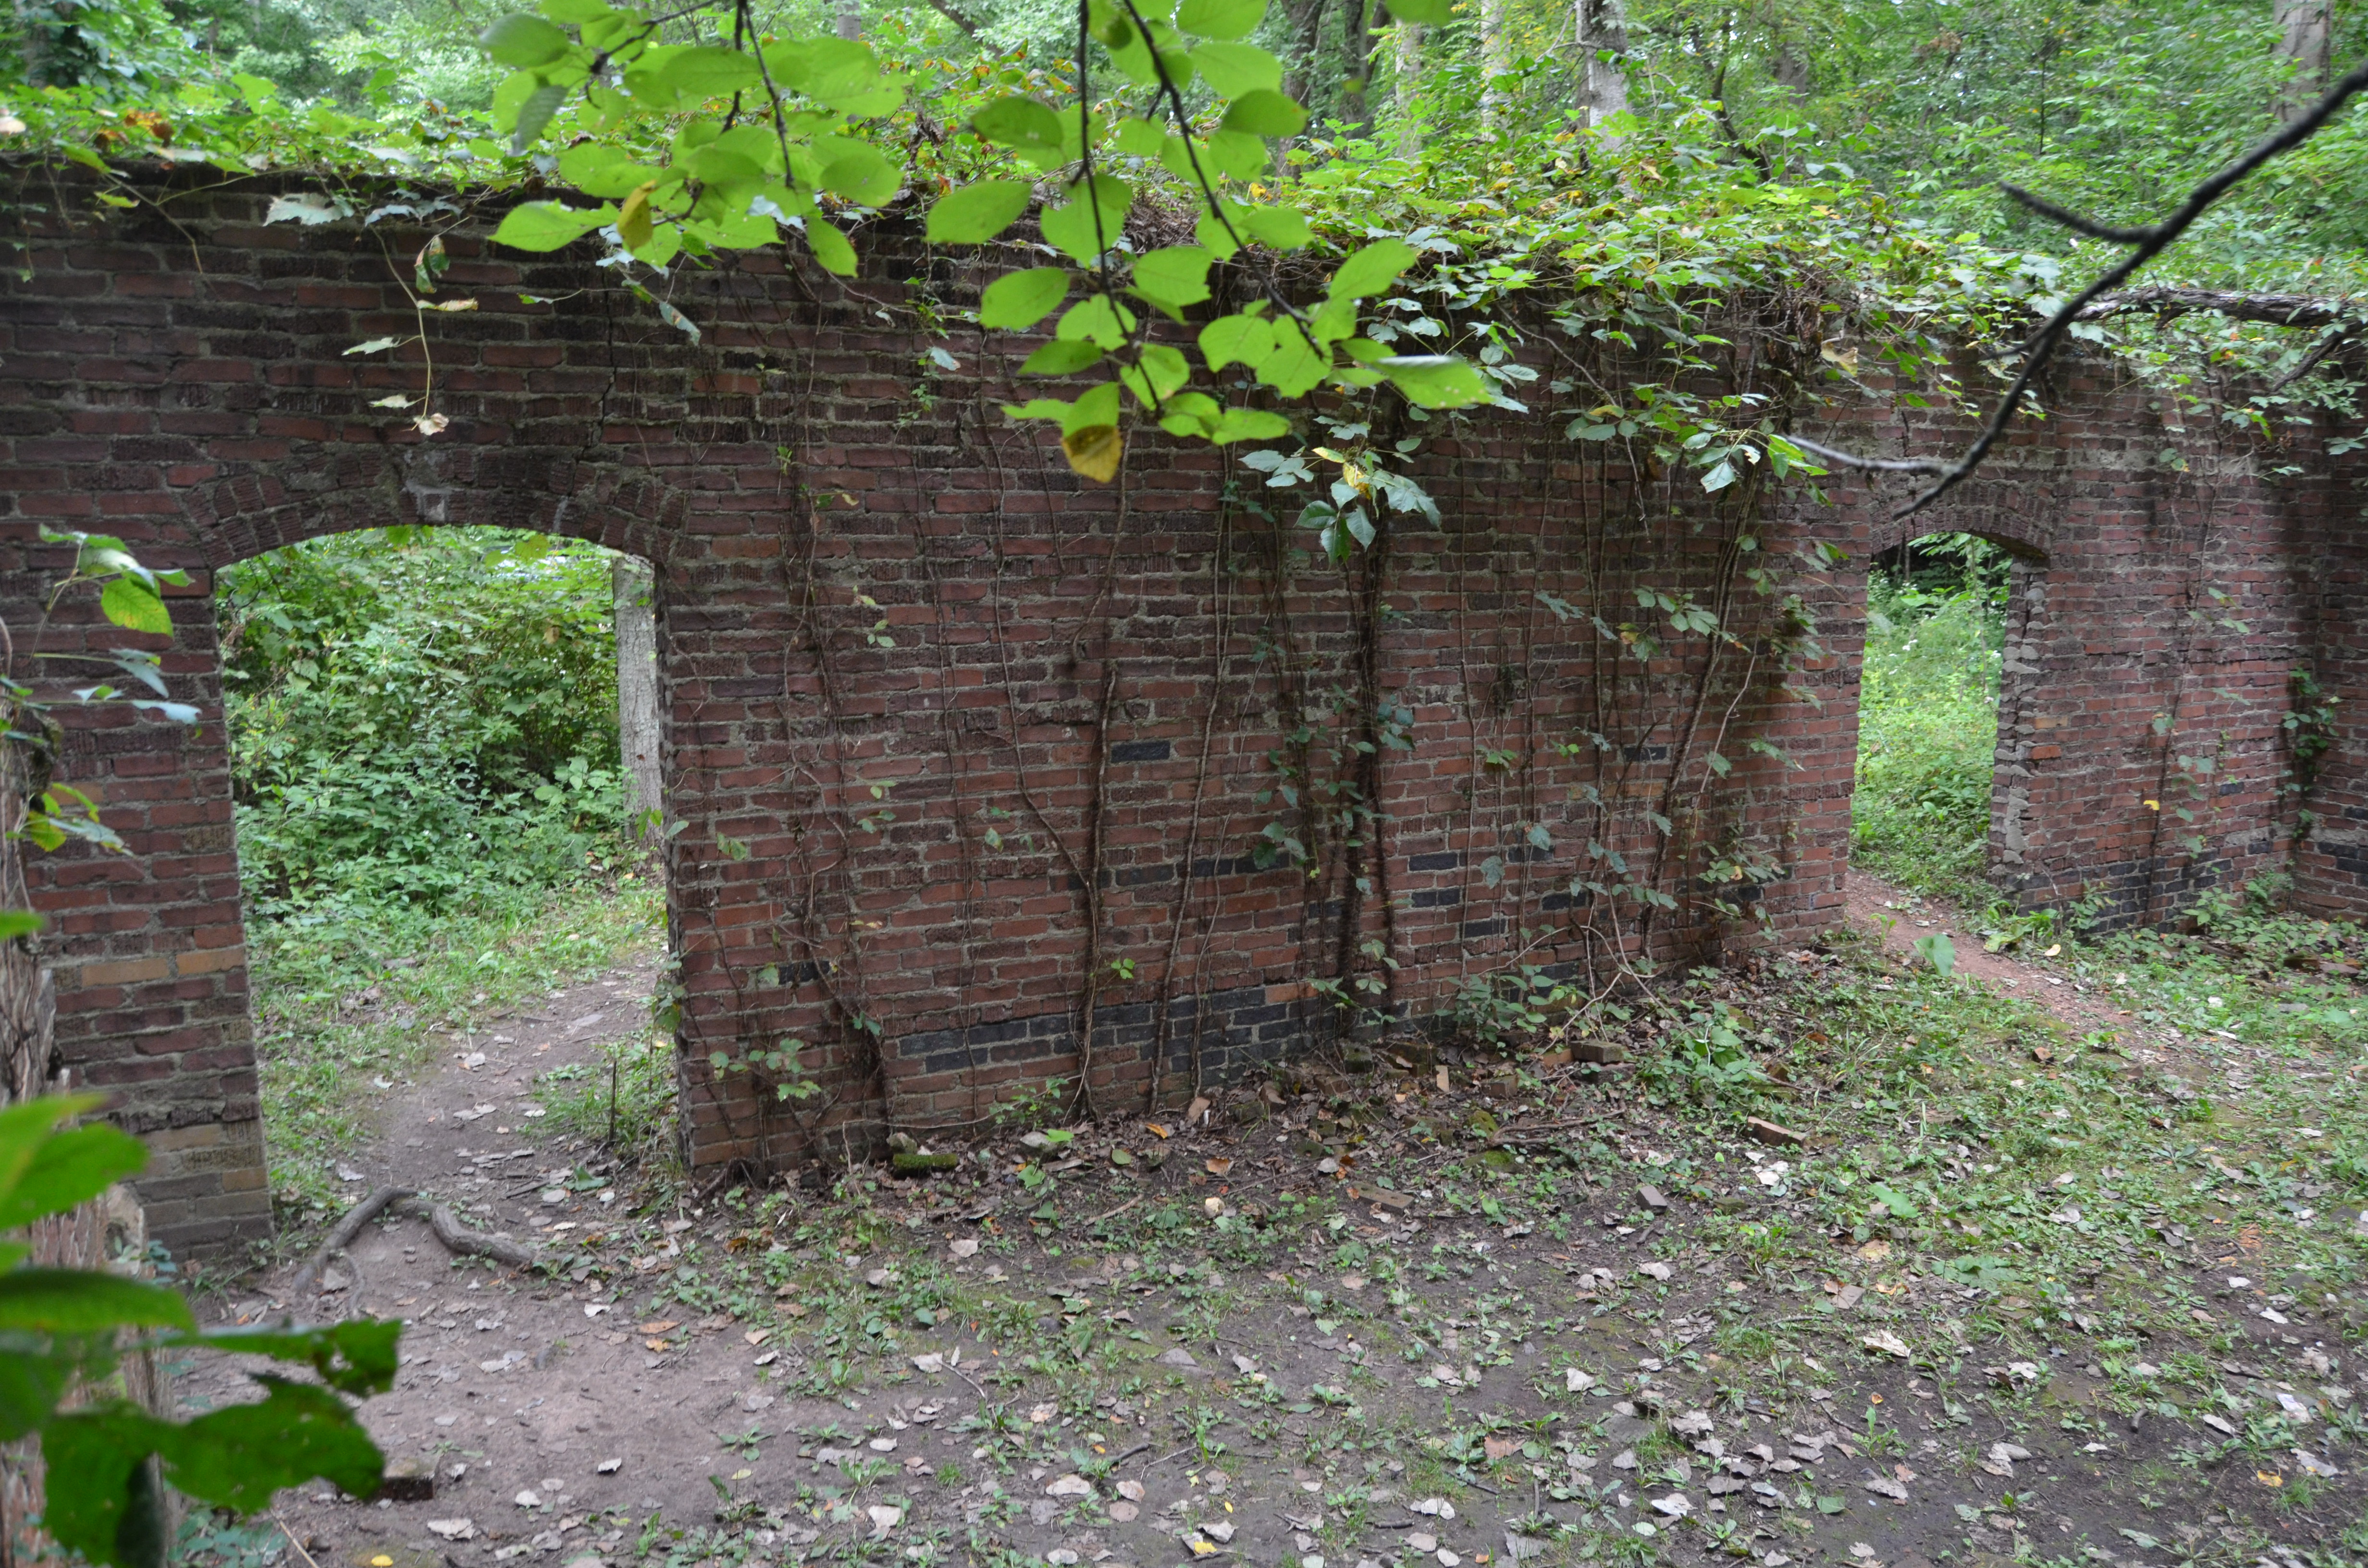 Lincoln Brick Park Historical Ruins Michigan